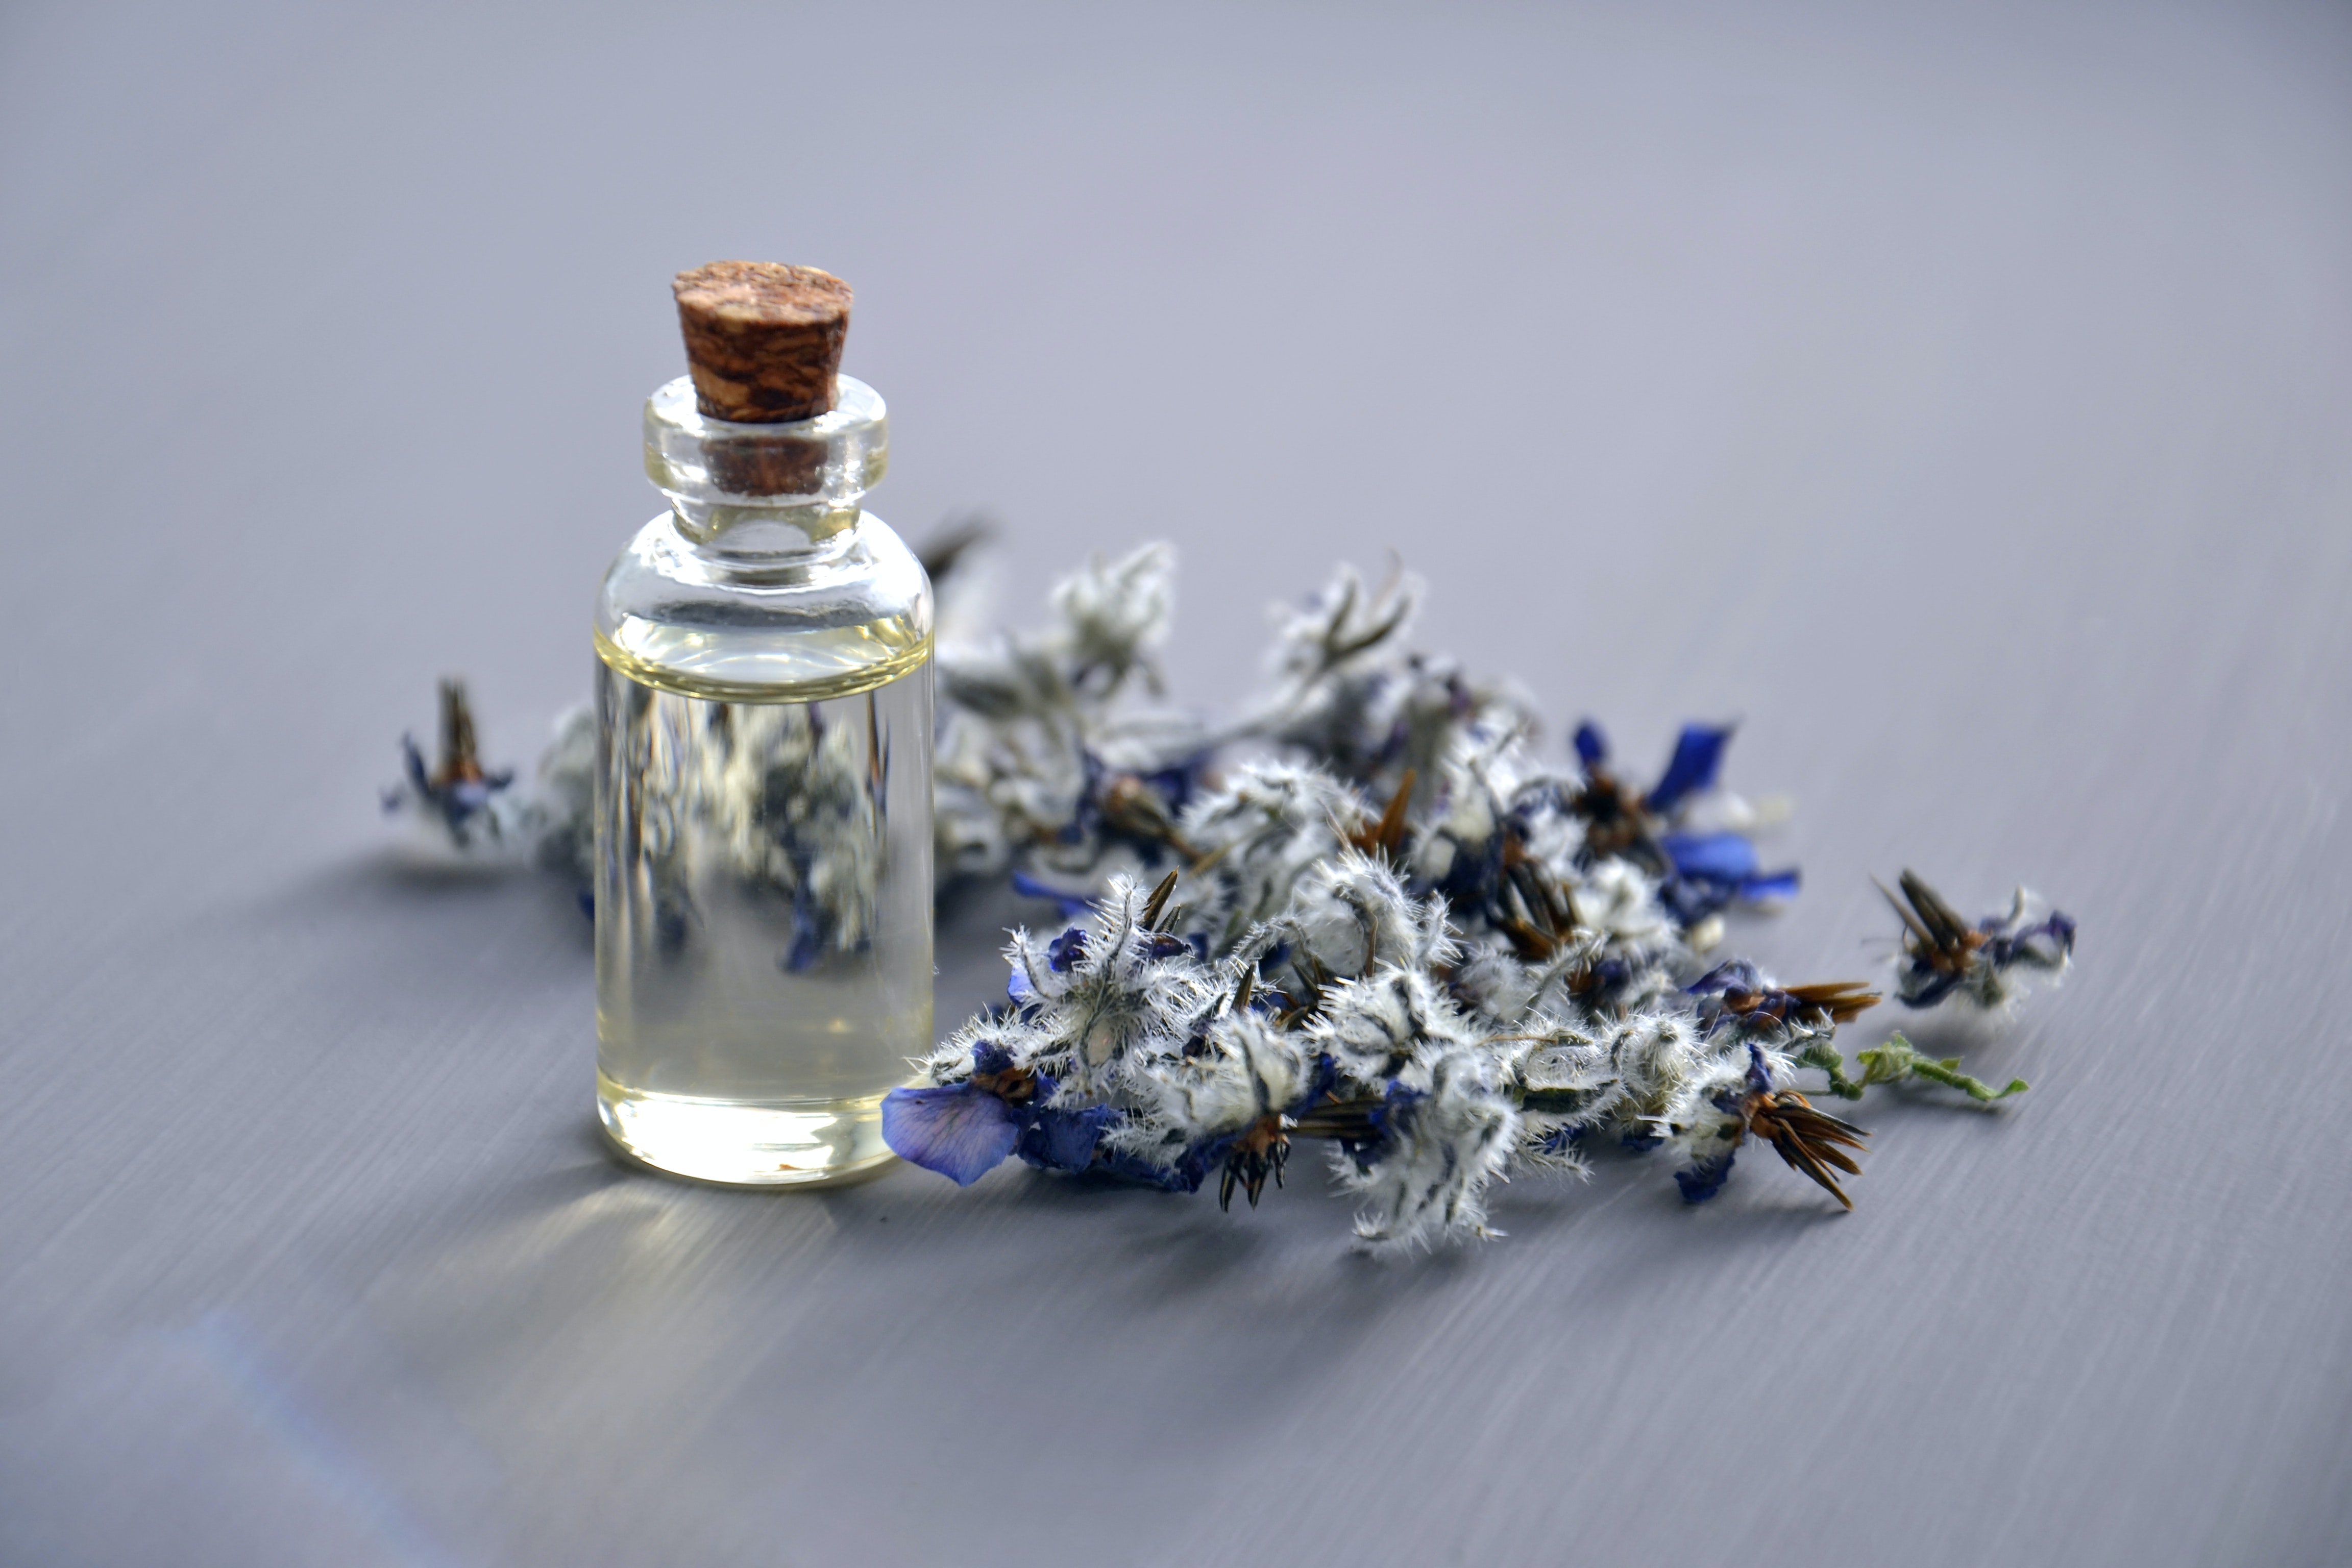 Aromaterapia: os benefícios da Lavanda - por: Maria Fernanda Novelli